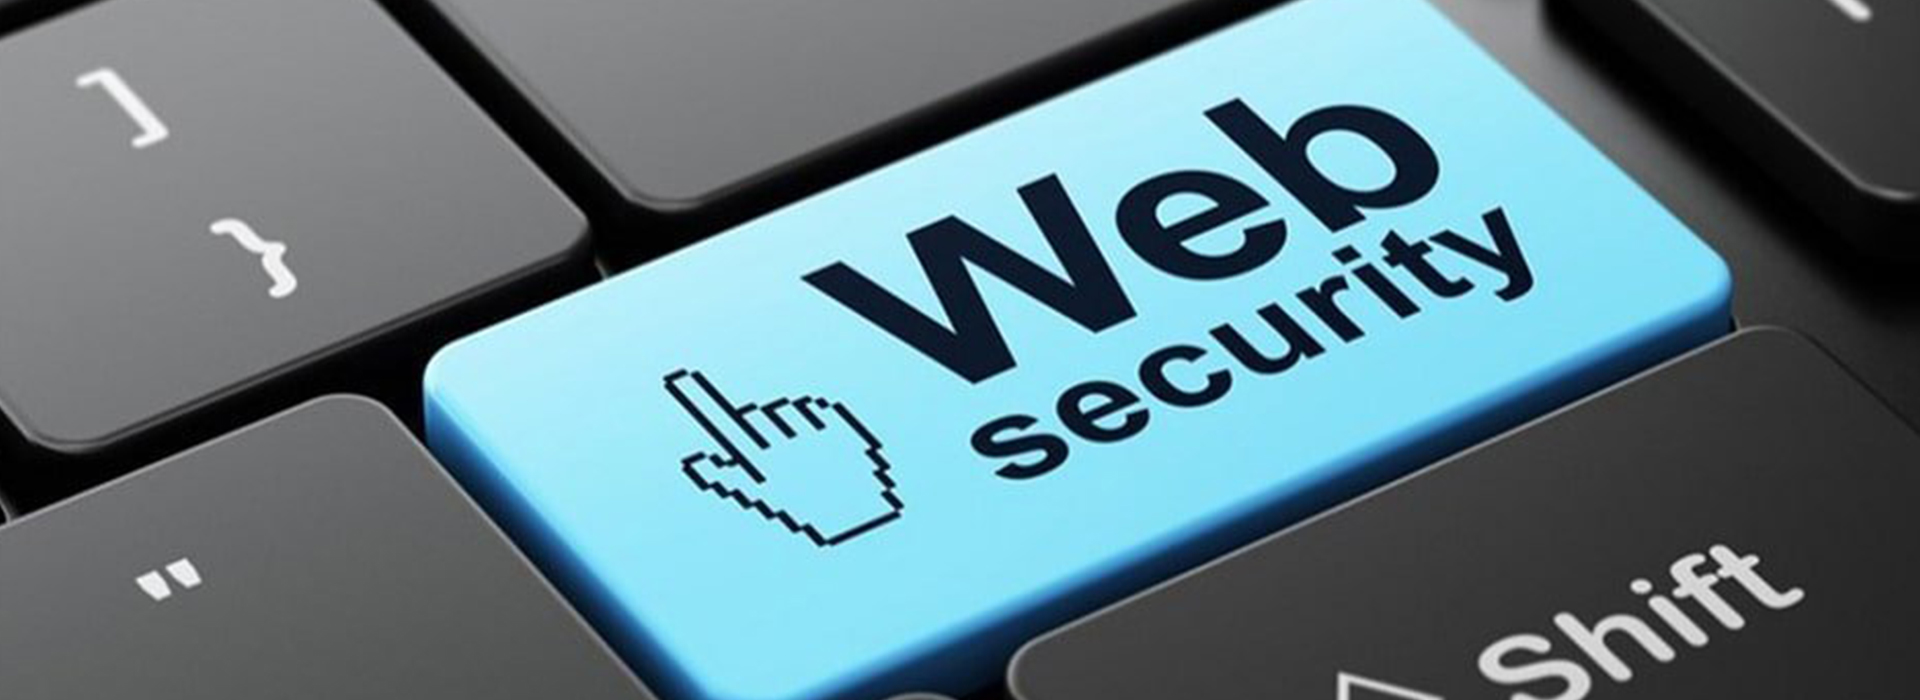 webs security